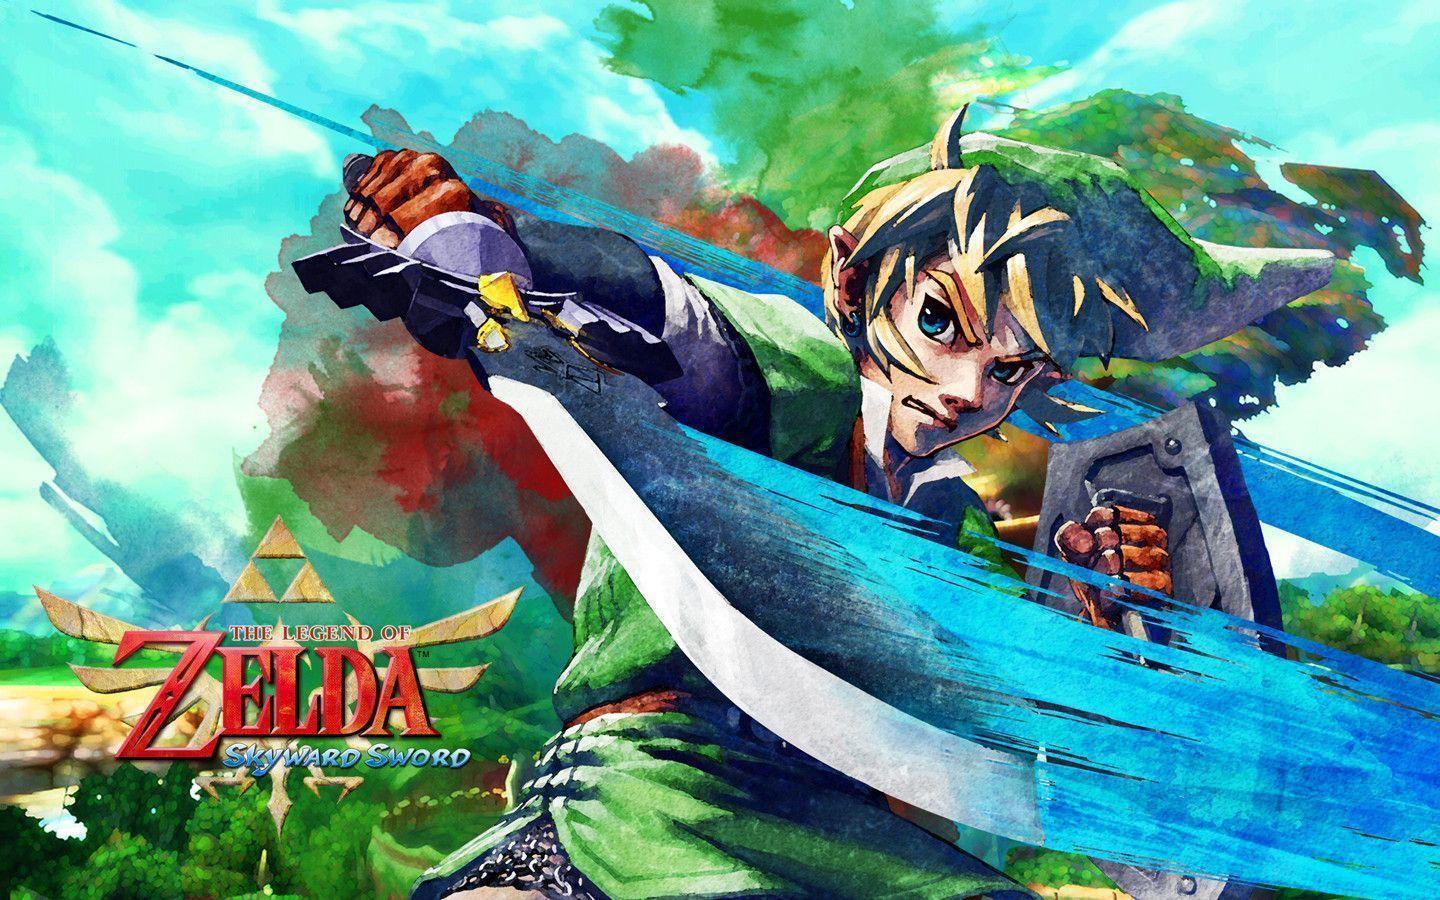 Wallpaper De Zelda Skyward Sword